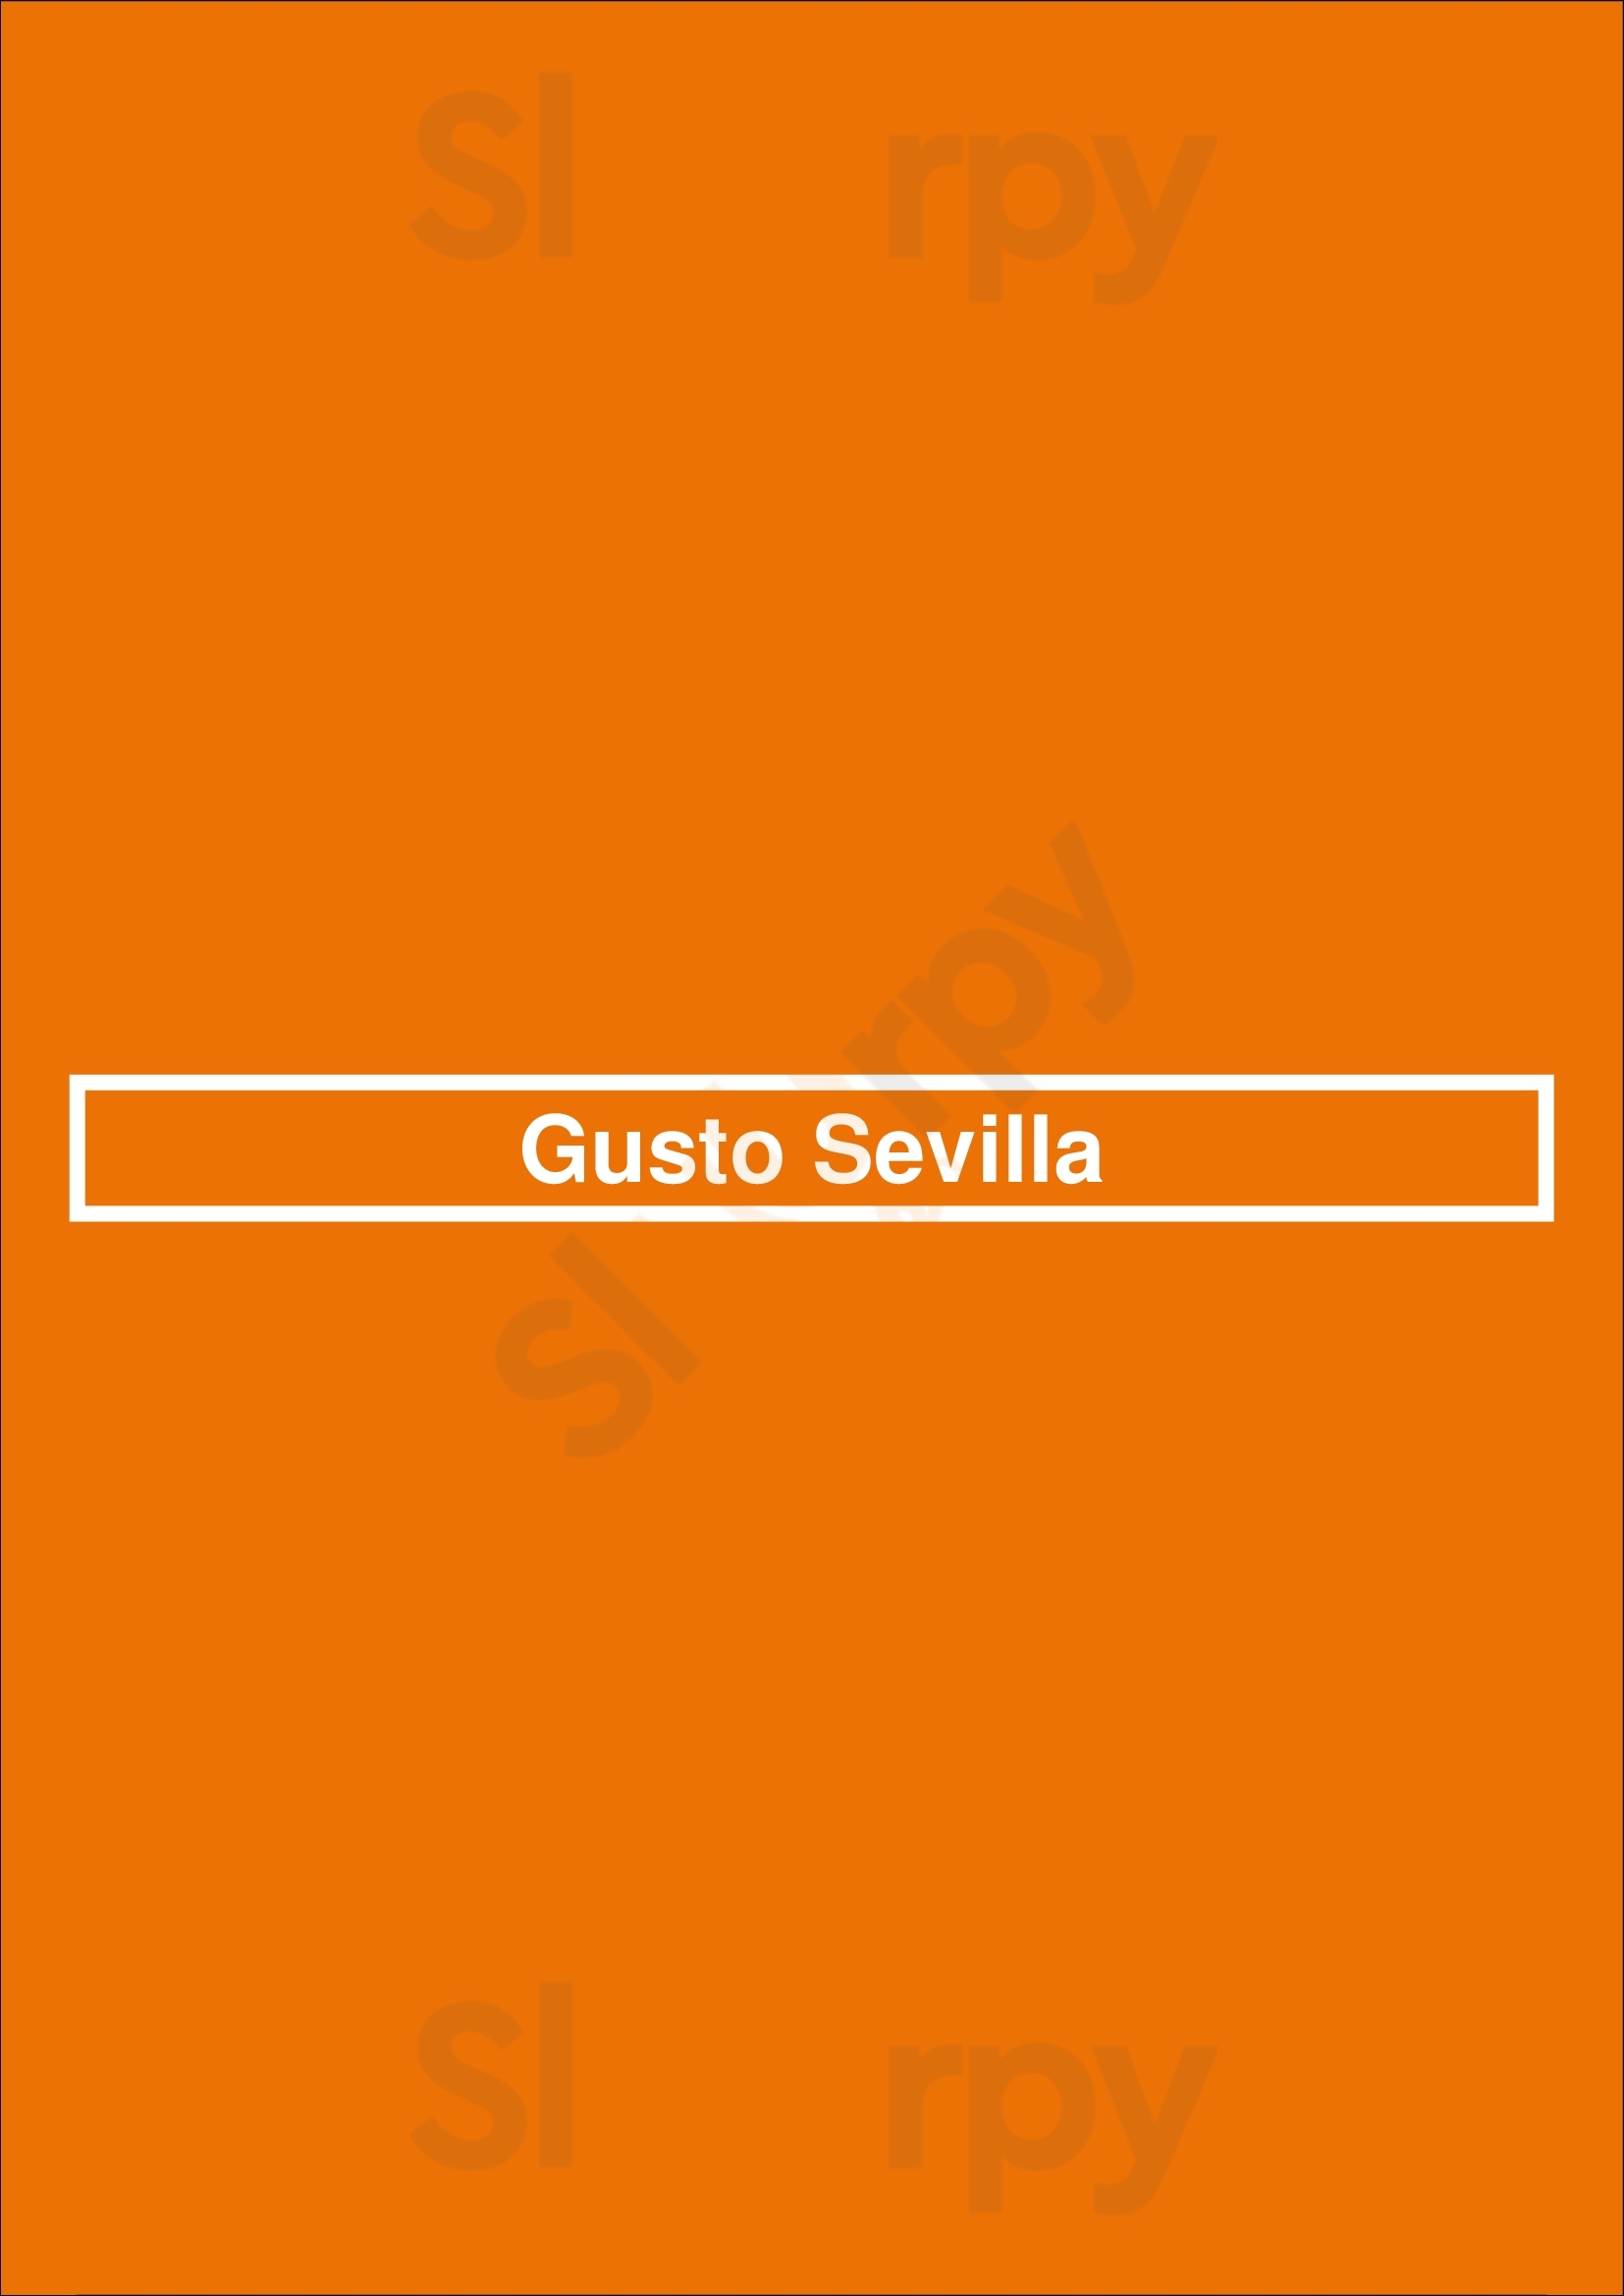 Gusto Sevilla Sevilla Menu - 1